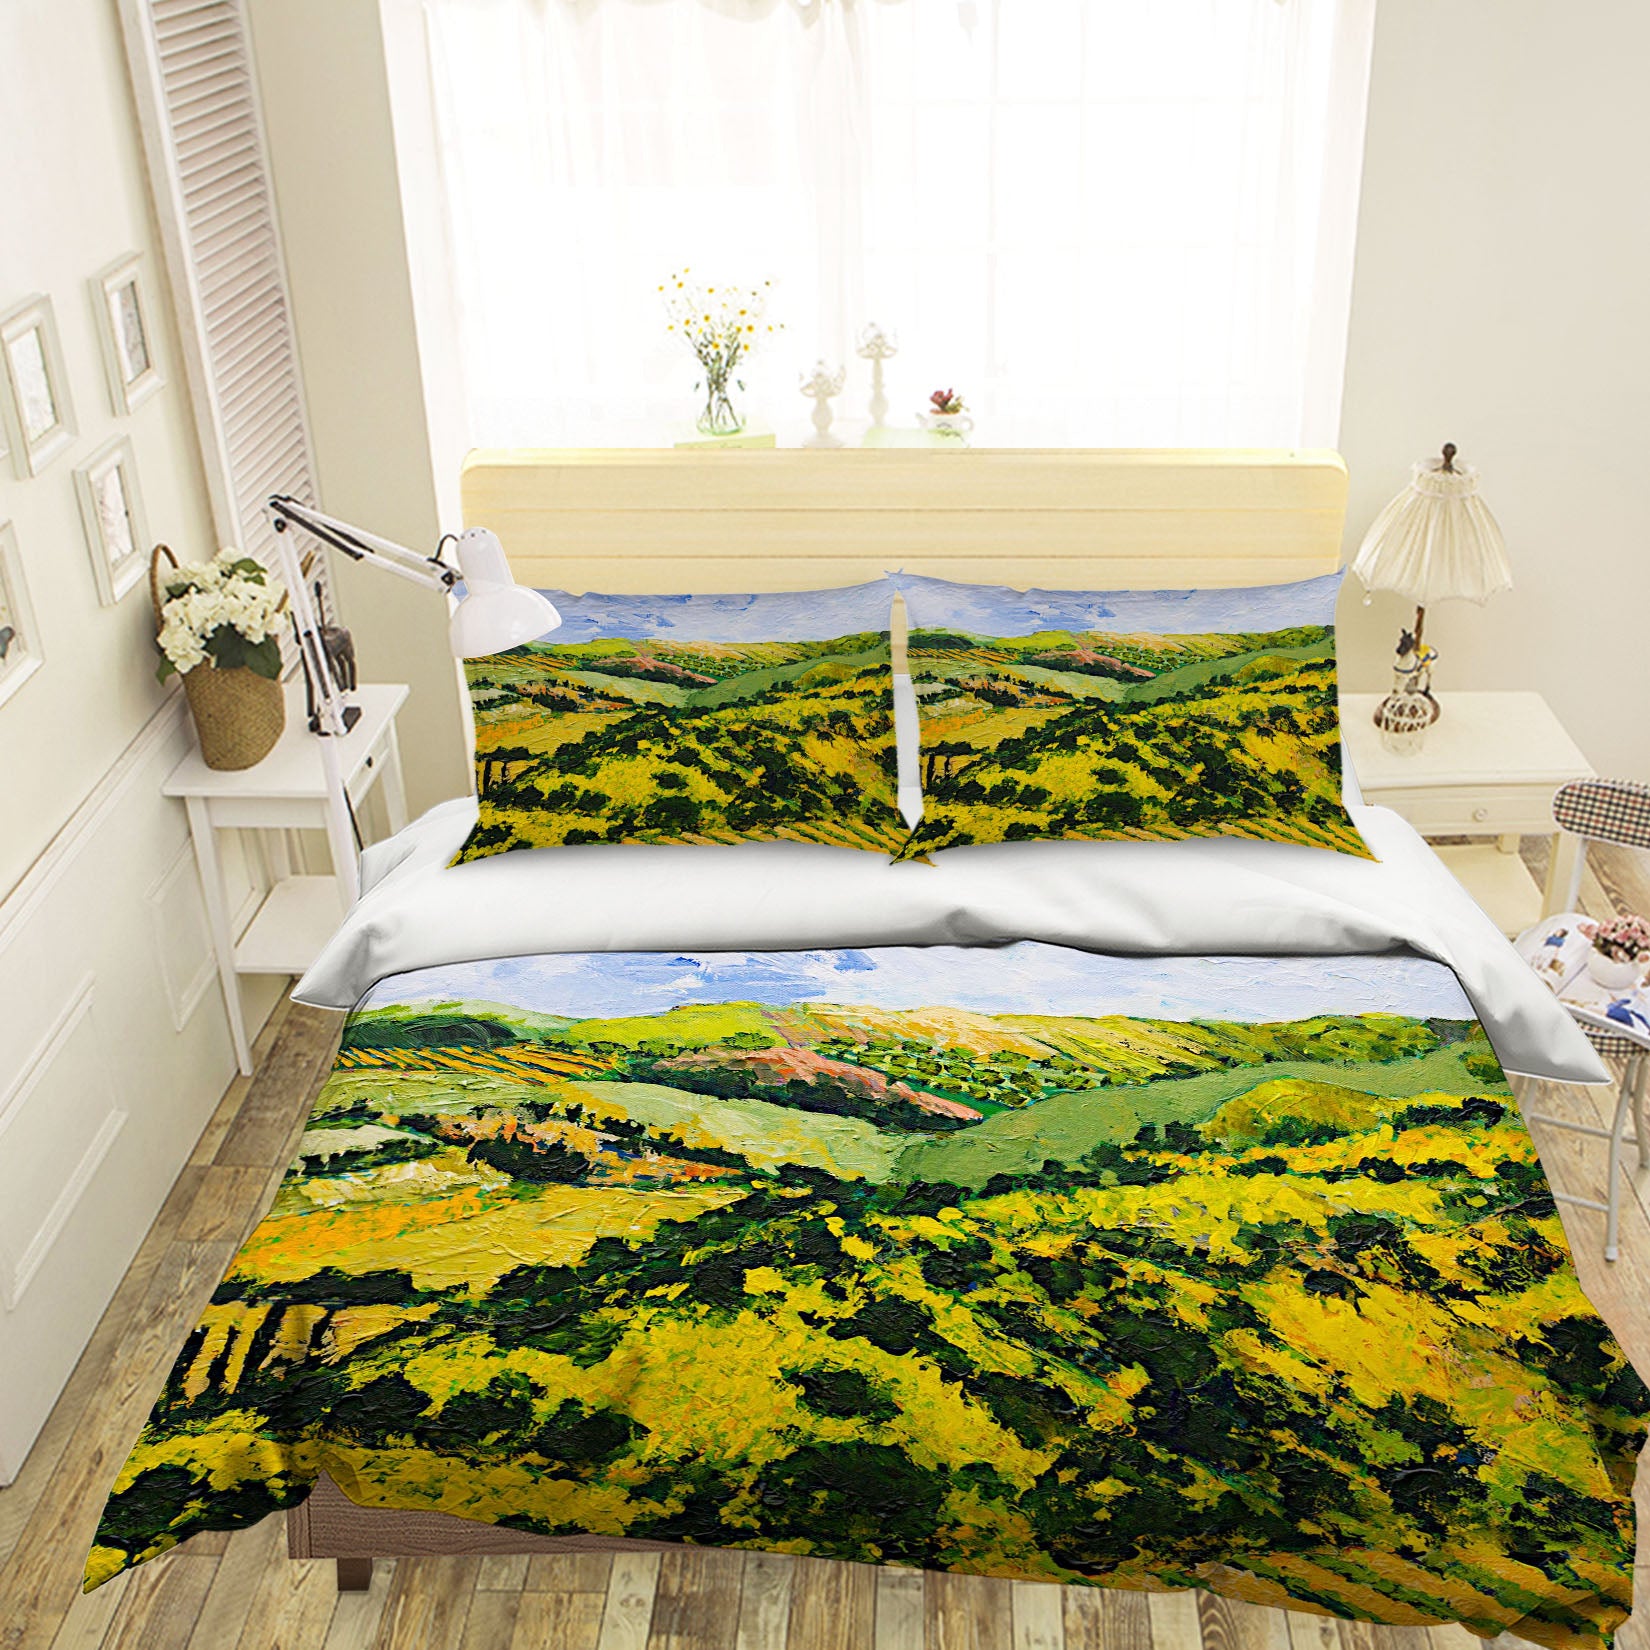 3D Deep Valley 1061 Allan P. Friedlander Bedding Bed Pillowcases Quilt